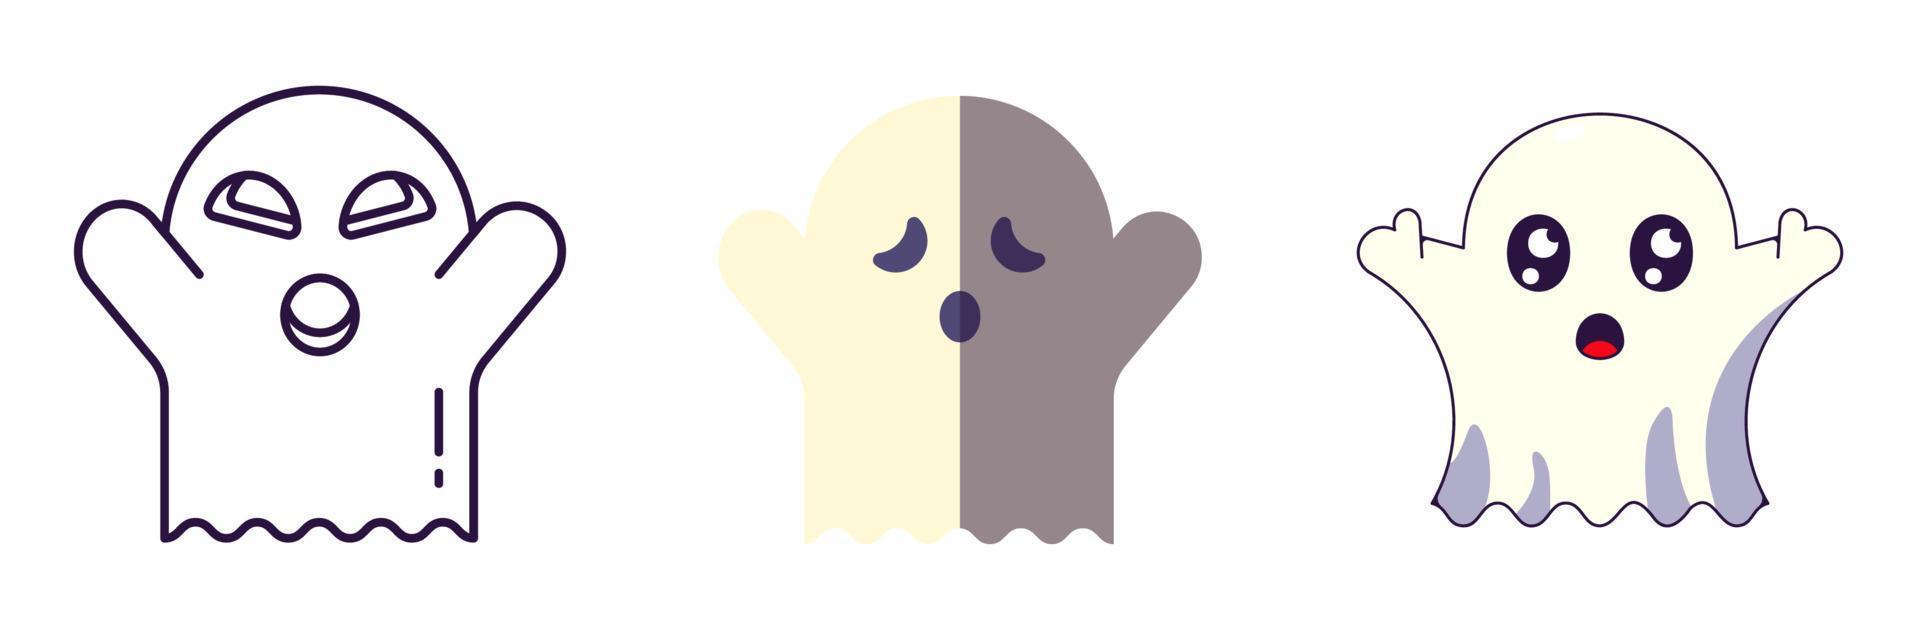 Halloween-Elemente. Der Vektor-Icon-Satz des Geistes wird in Linien-, Flach- und Cartoon-Stilen gezeichnet. Perfekt für Apps, Bücher, Artikel, Geschäfte, Geschäfte, Anzeigen vektor